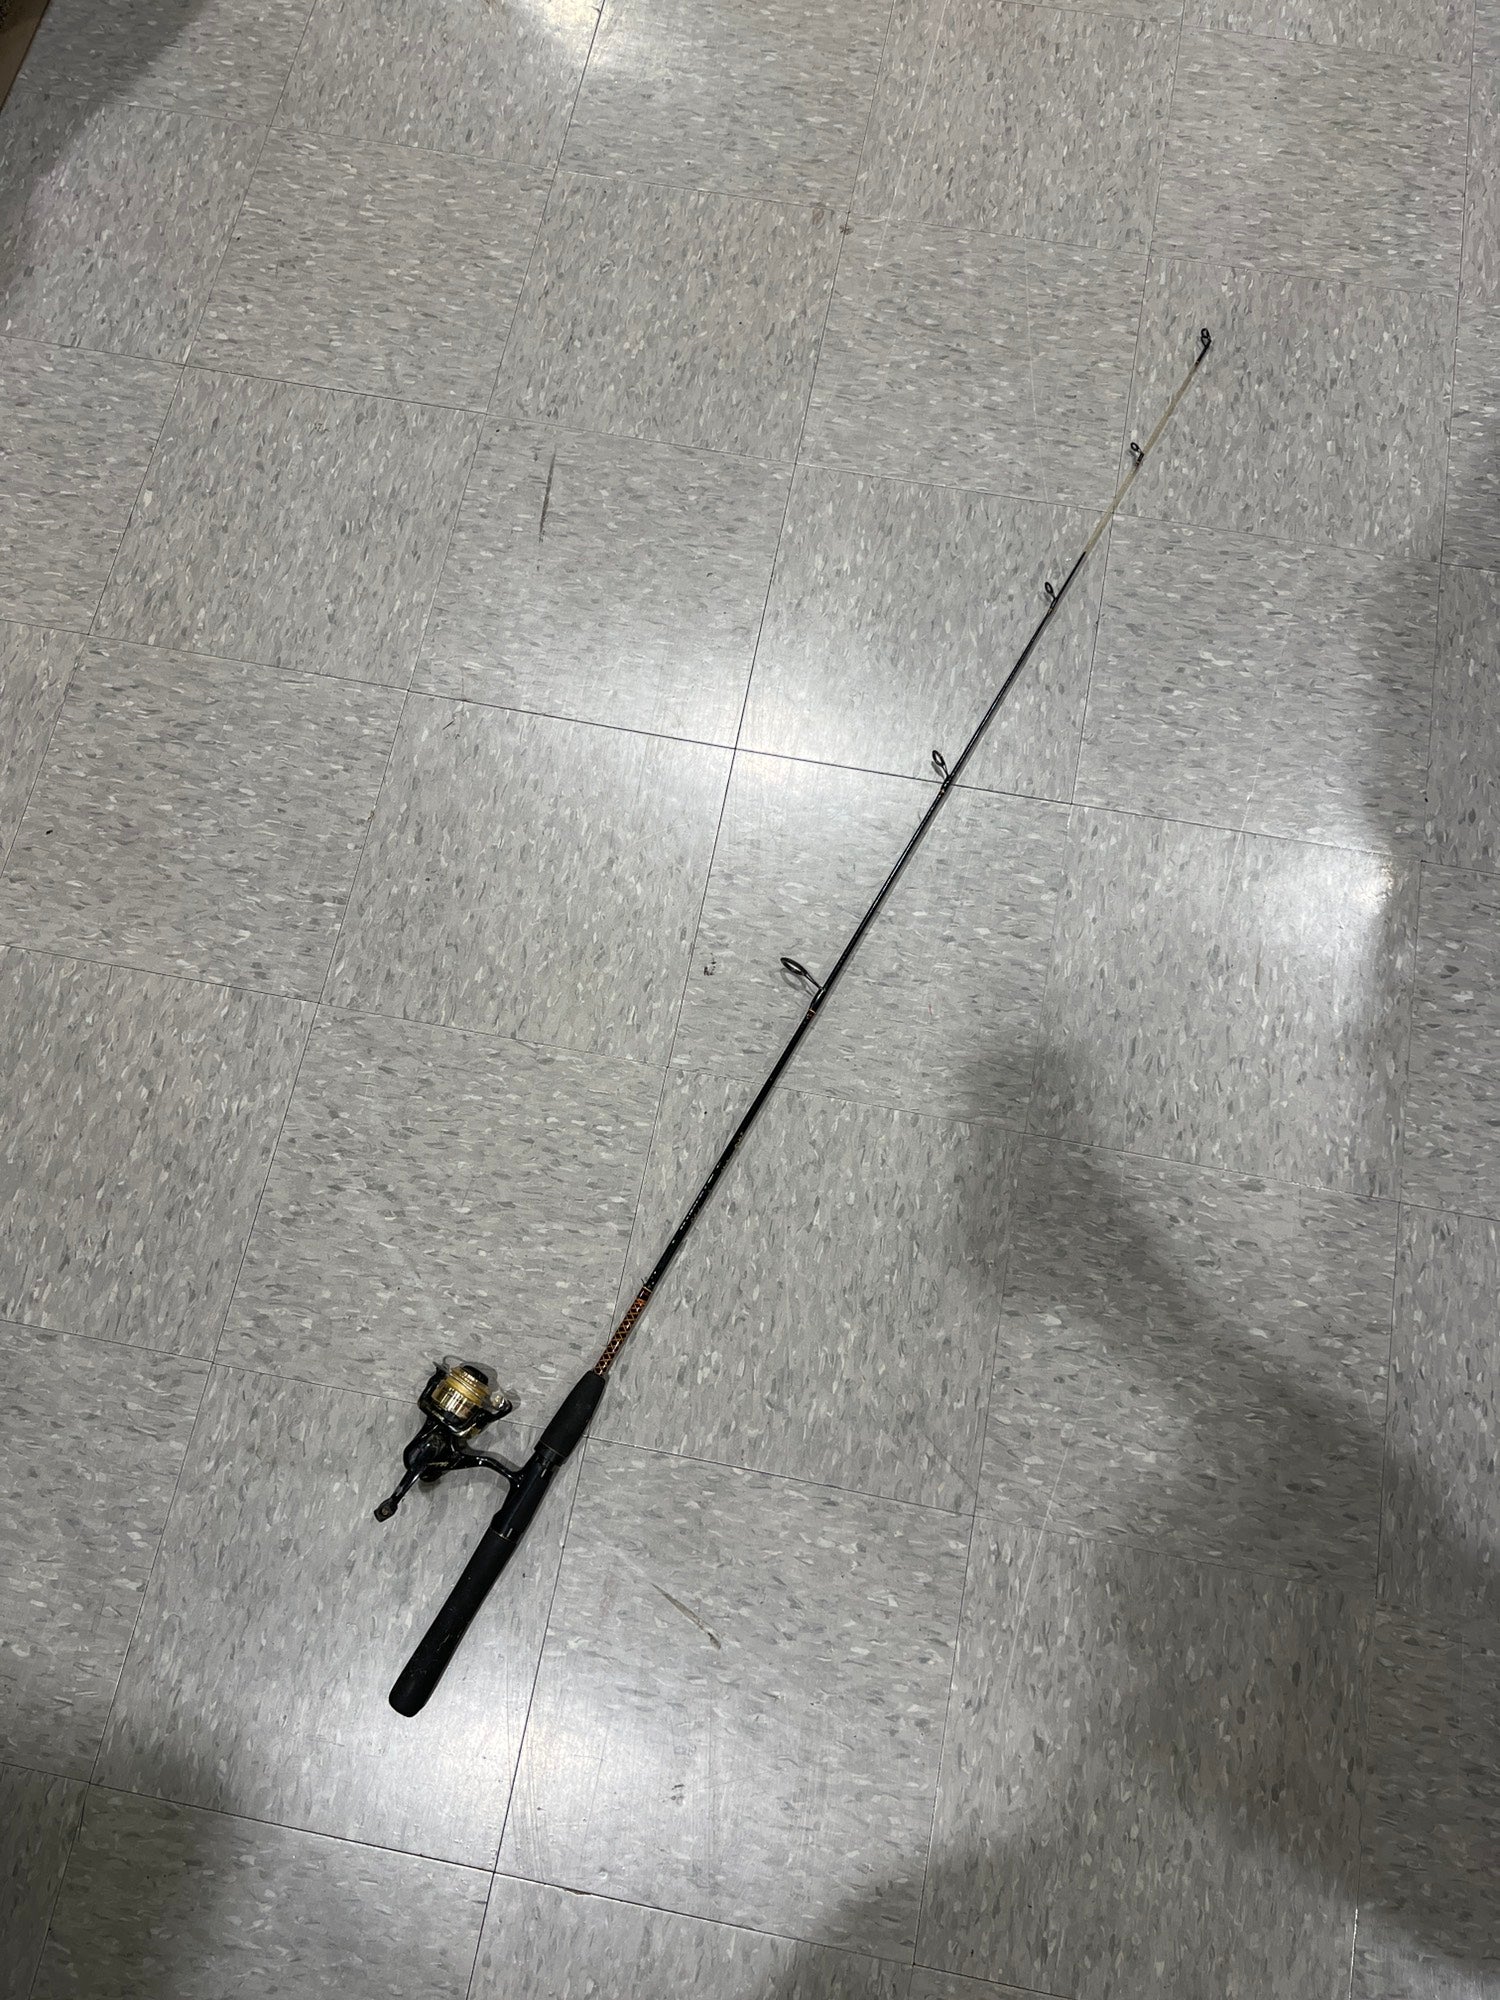 Used Shakespeare Ugly Stik Fishing Rod